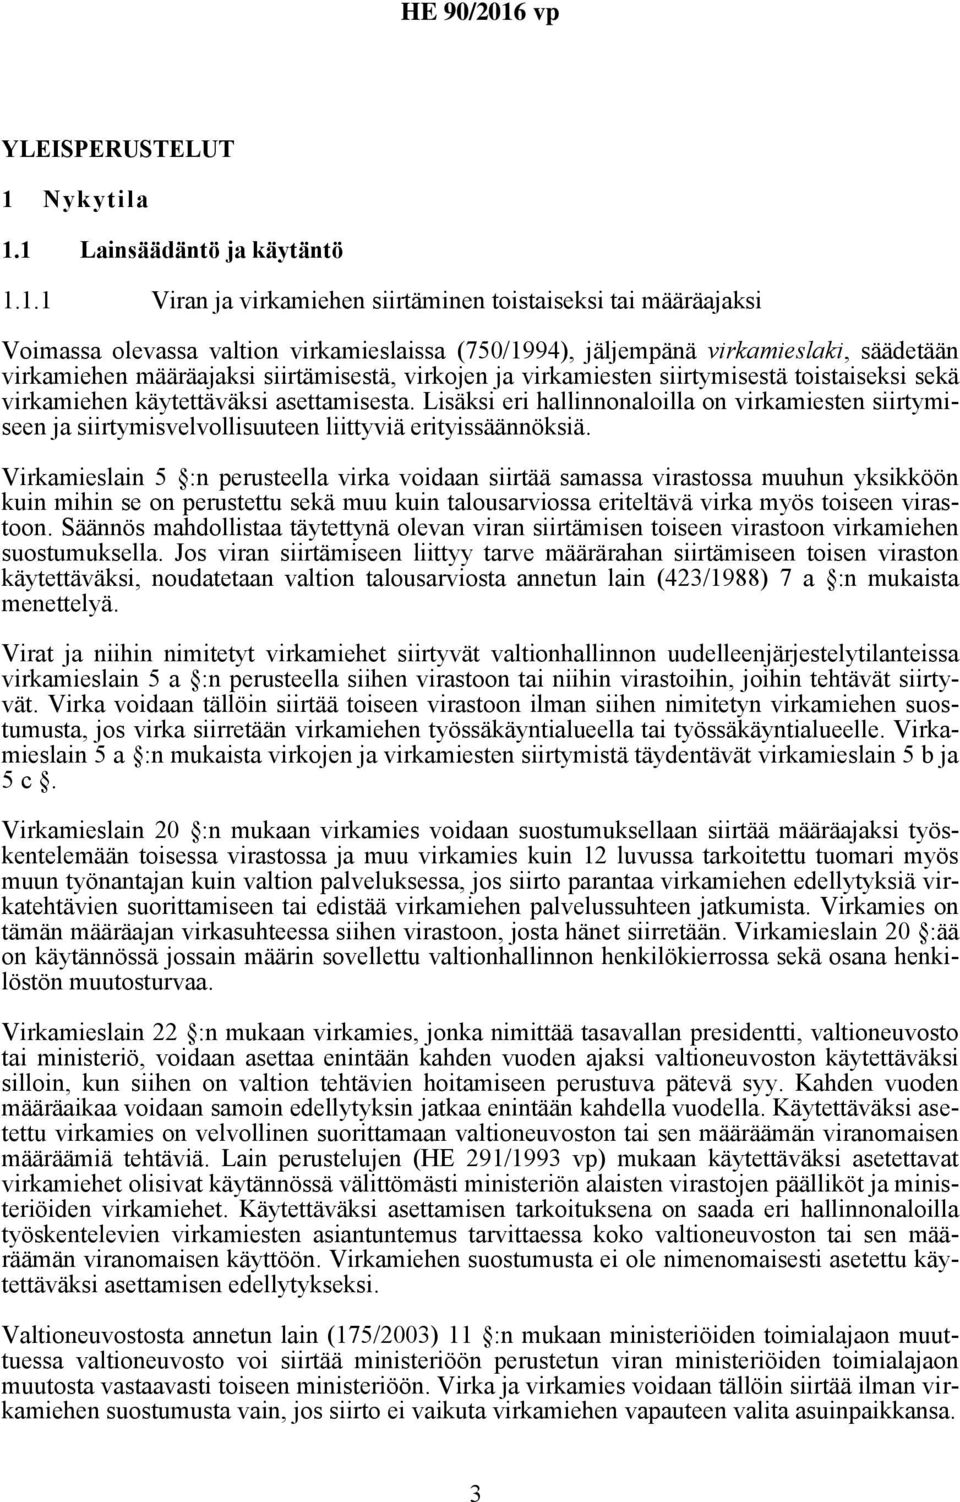 1 Lainsäädäntö ja käytäntö 1.1.1 Viran ja virkamiehen siirtäminen toistaiseksi tai määräajaksi Voimassa olevassa valtion virkamieslaissa (750/1994), jäljempänä virkamieslaki, säädetään virkamiehen